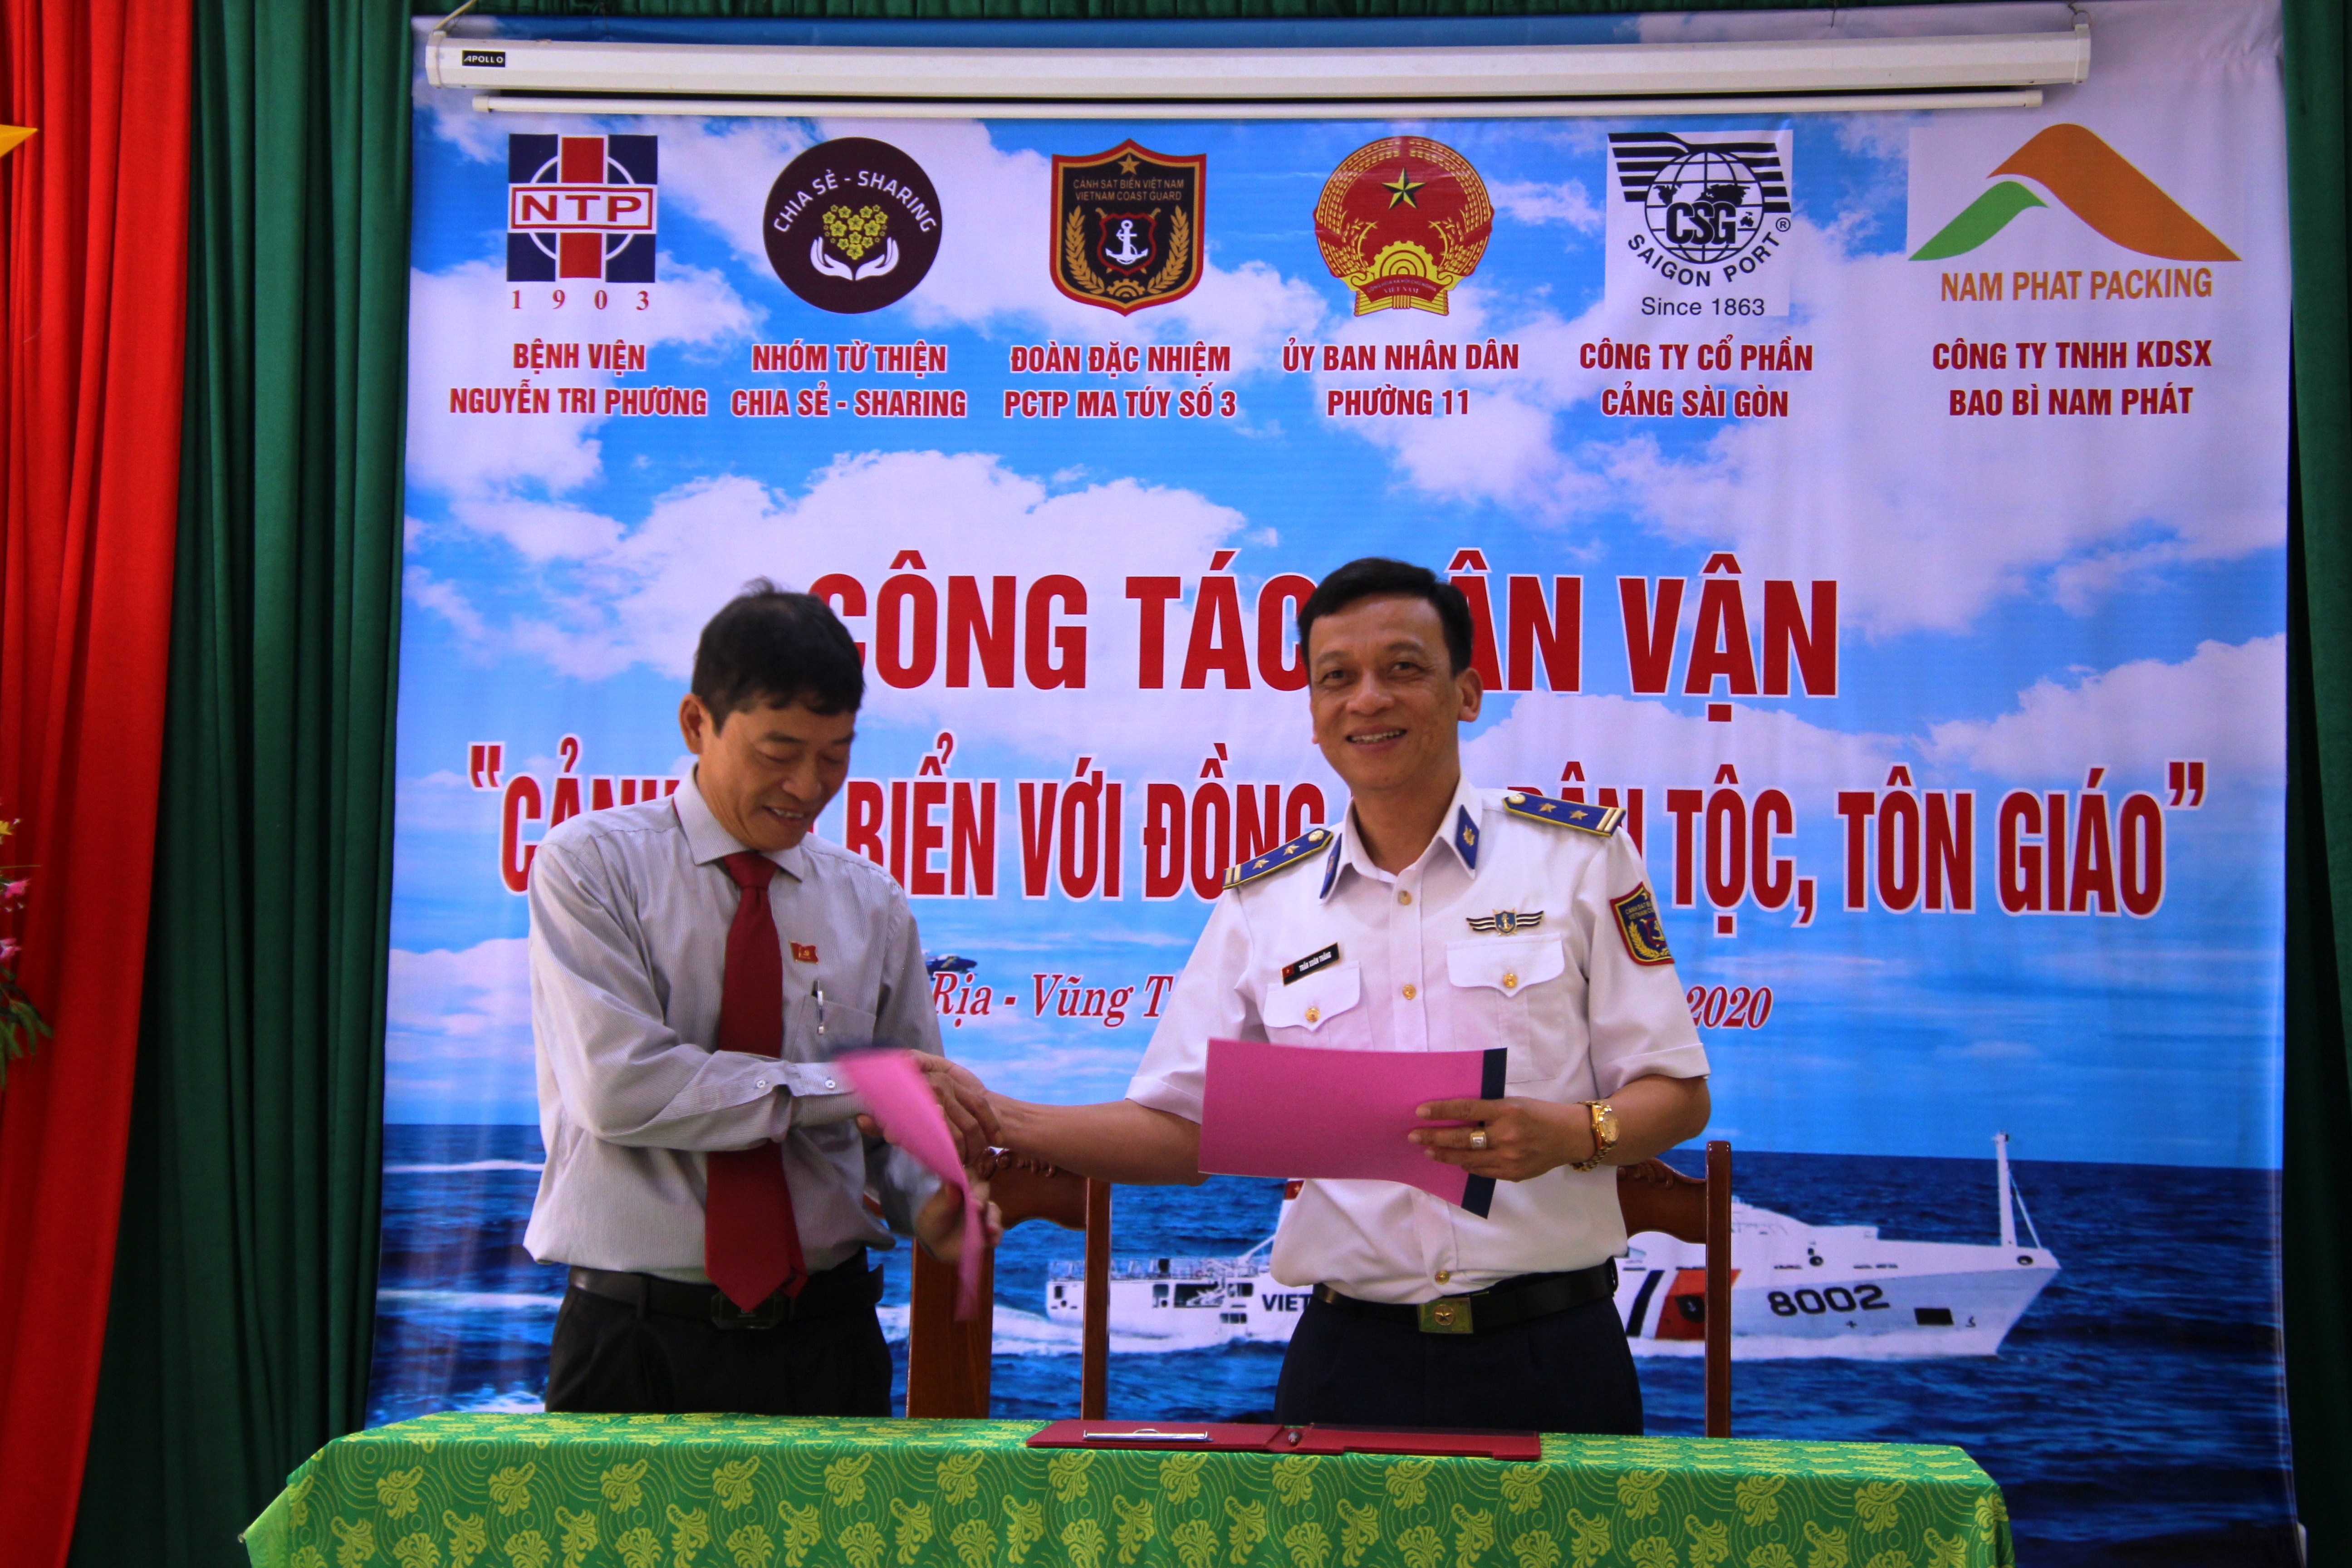 Cảnh sát biển Việt Nam: Đồng hành cùng đồng bào dân tộc, tôn giáo 3